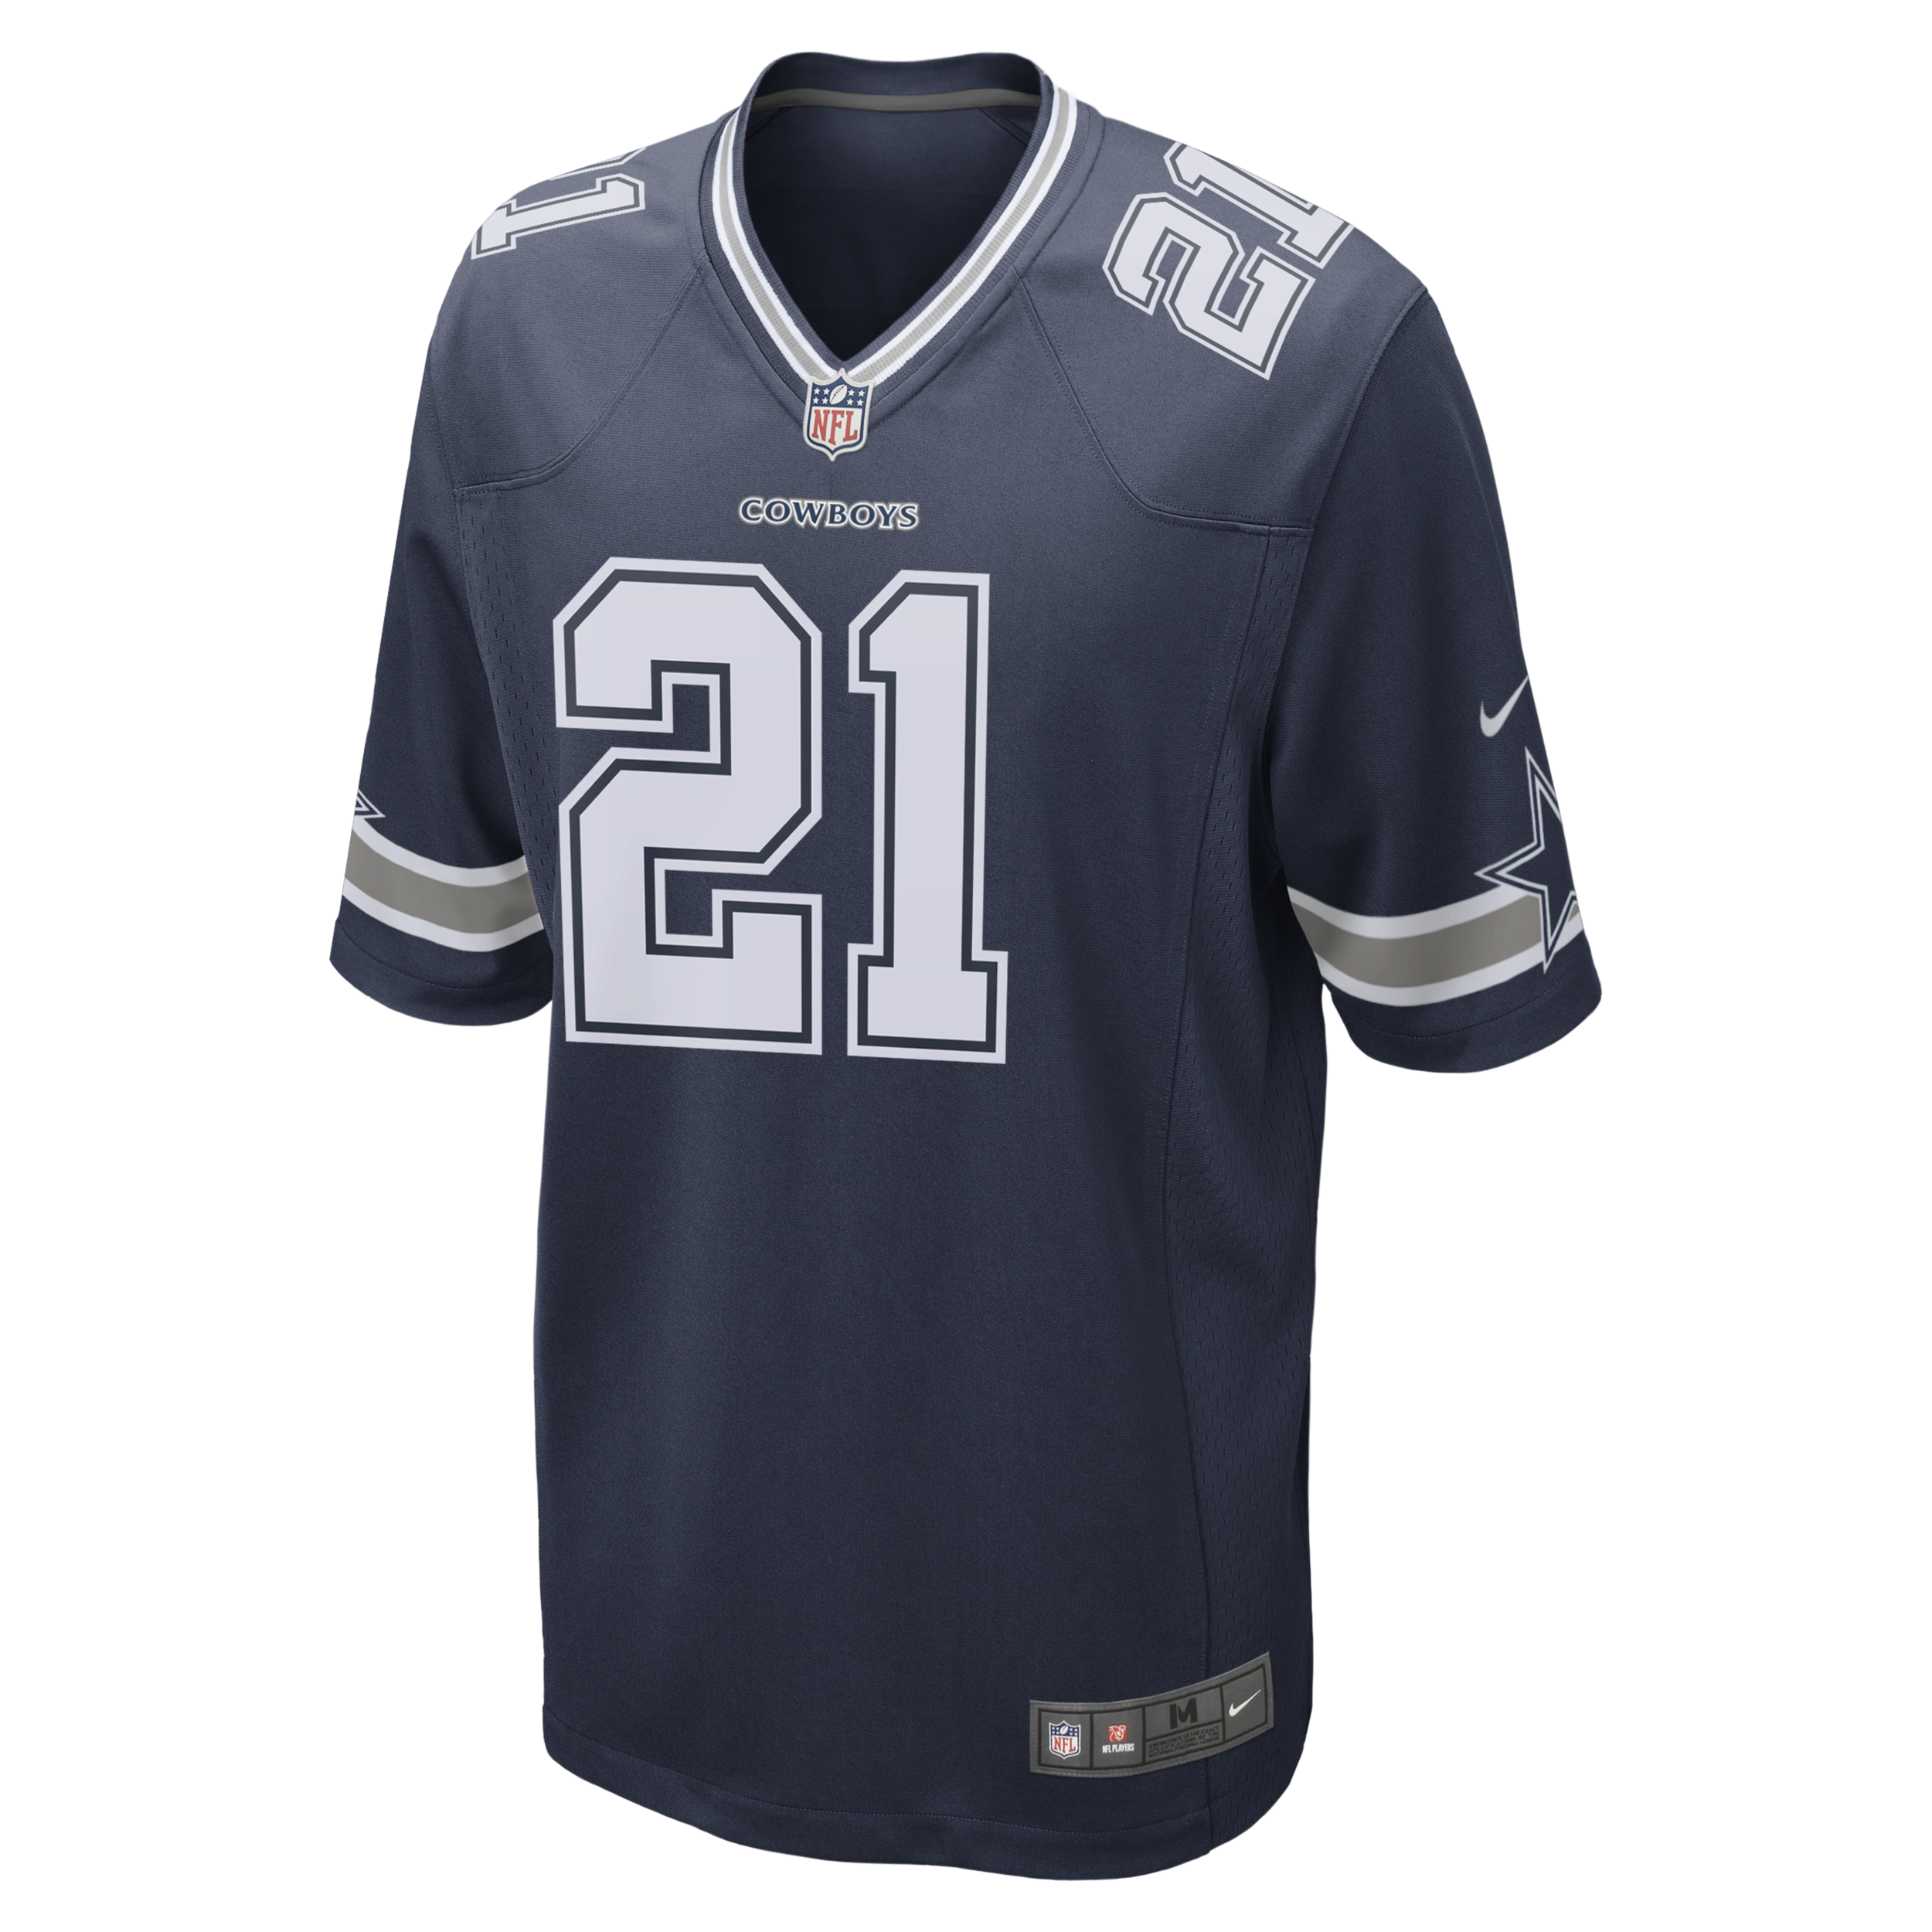 Nike NFL Dallas Cowboys (Ezekiel Elliott) American-football-wedstrijdjersey voor heren Blauw